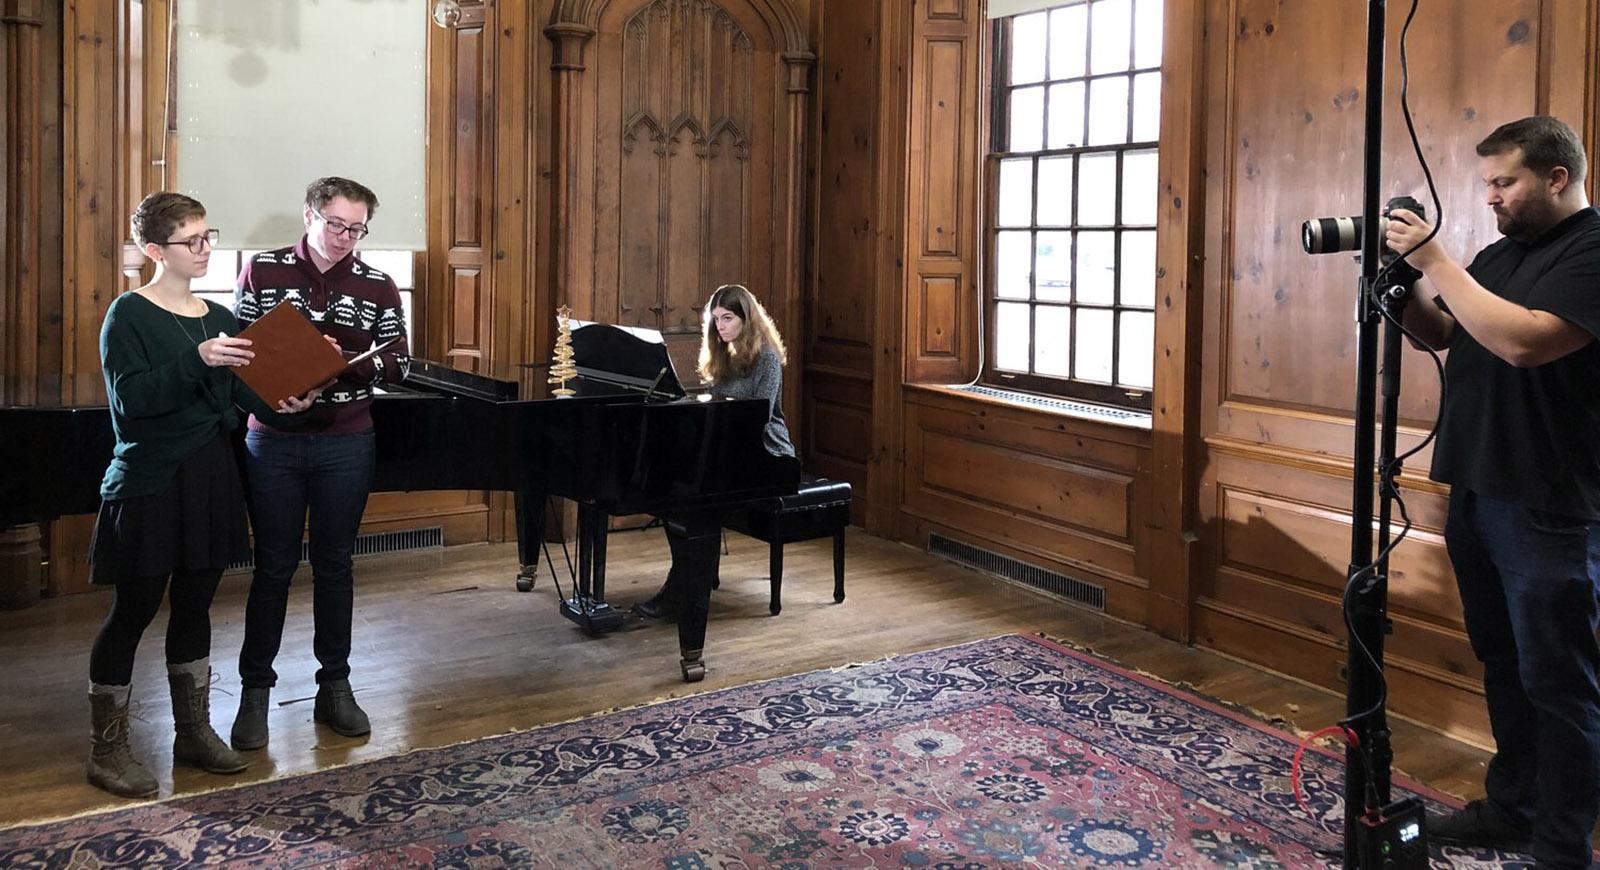 两名学生站着唱歌，一名女子在他们身后弹奏三角钢琴. 照片左边的人正在给他们拍照.